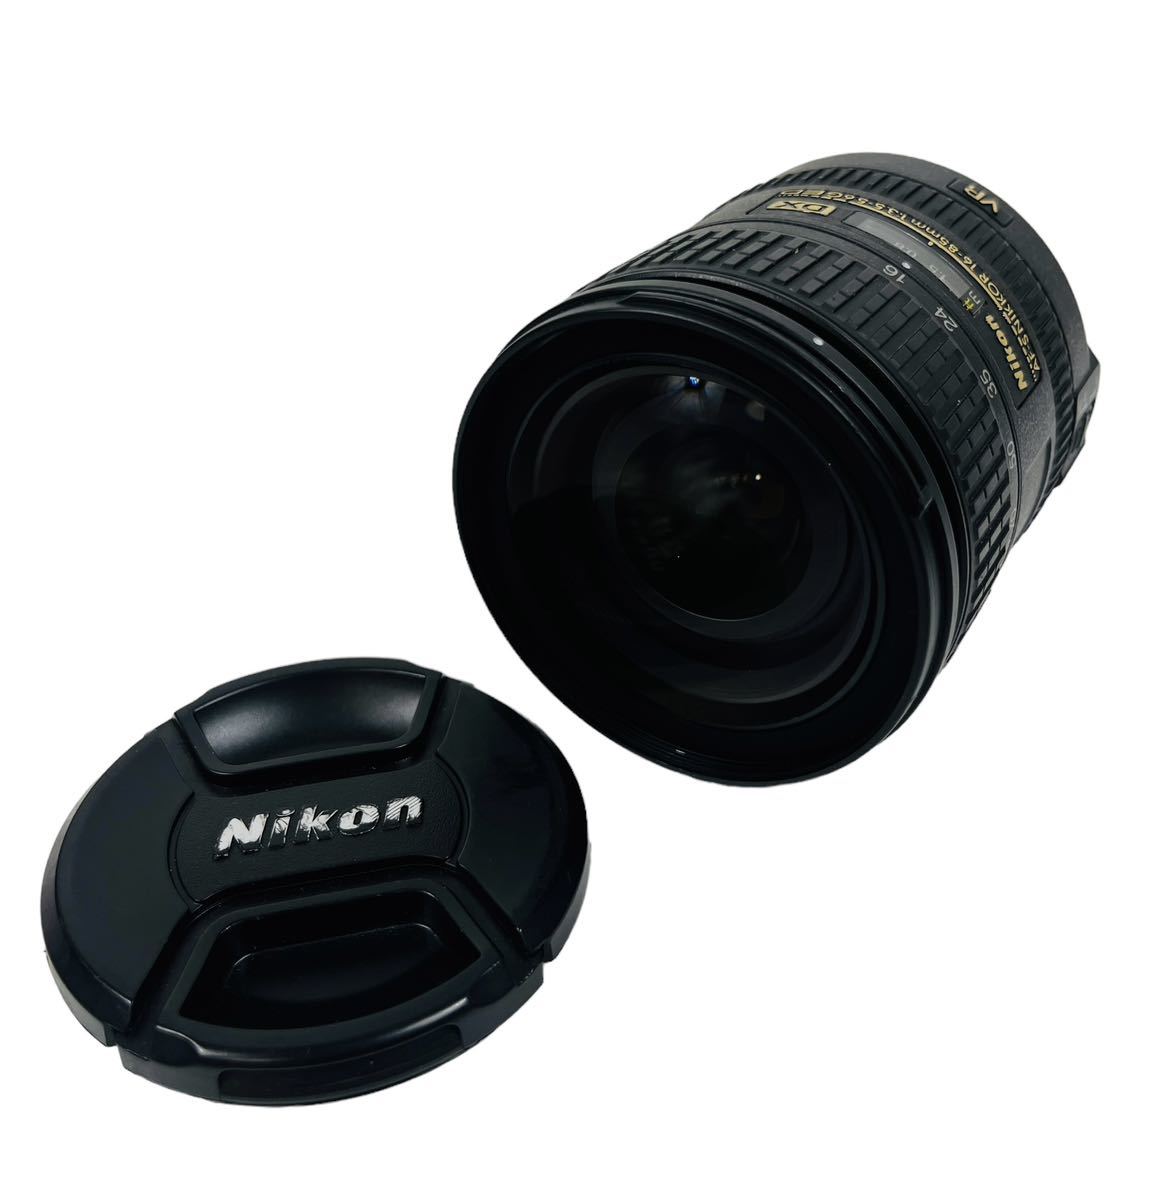 Nikon ニコン カメラ オートフォーカス レンズ AF-S NIKKOR 16-85mm 1:3.5-5.6G ED DX VR